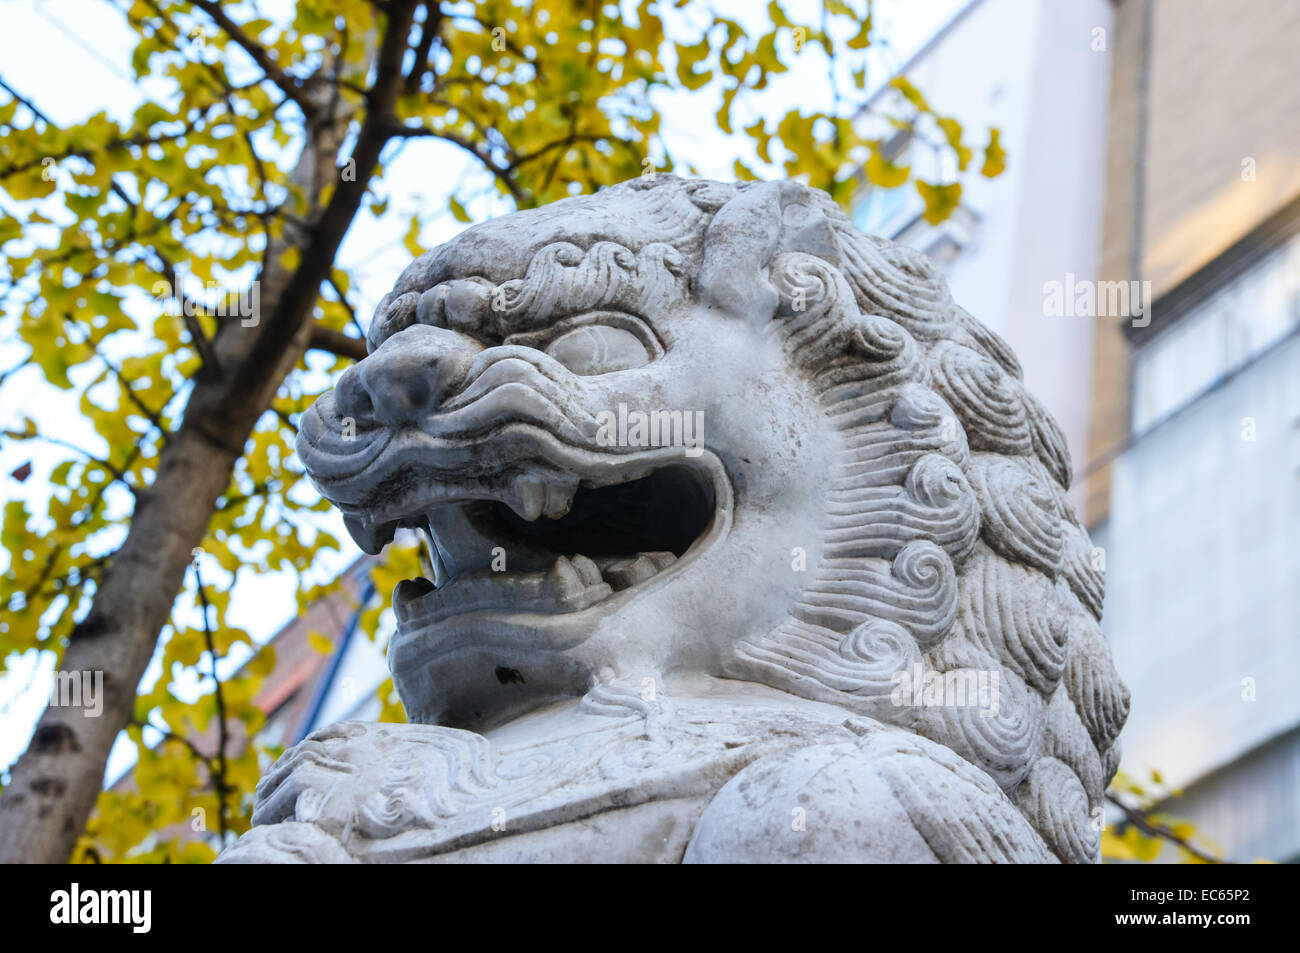 Gros plan d'un lion de pierre, lion chien ou foo chien sculpture à Chinatown, Londres Angleterre Royaume-Uni Banque D'Images